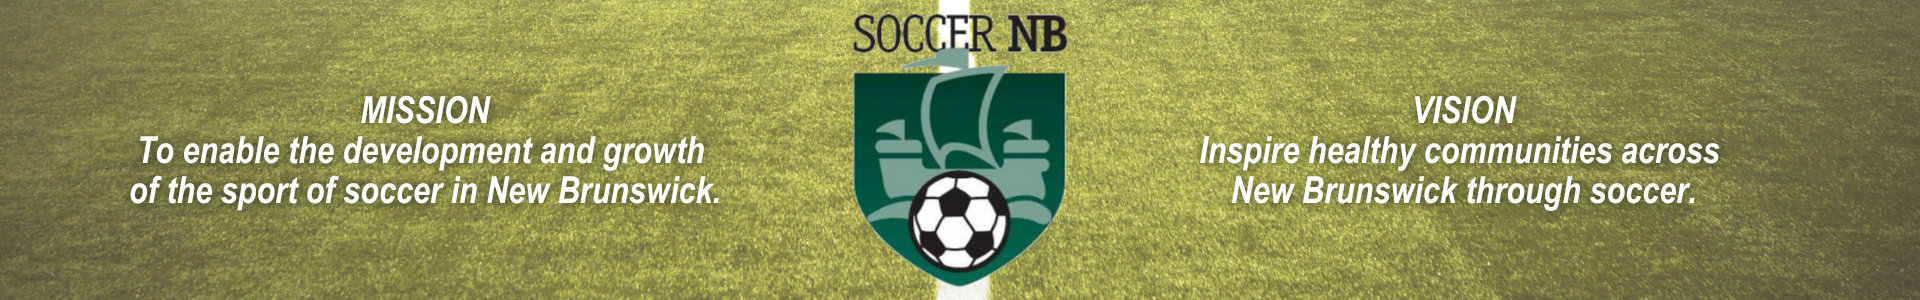 Soccer NB Home